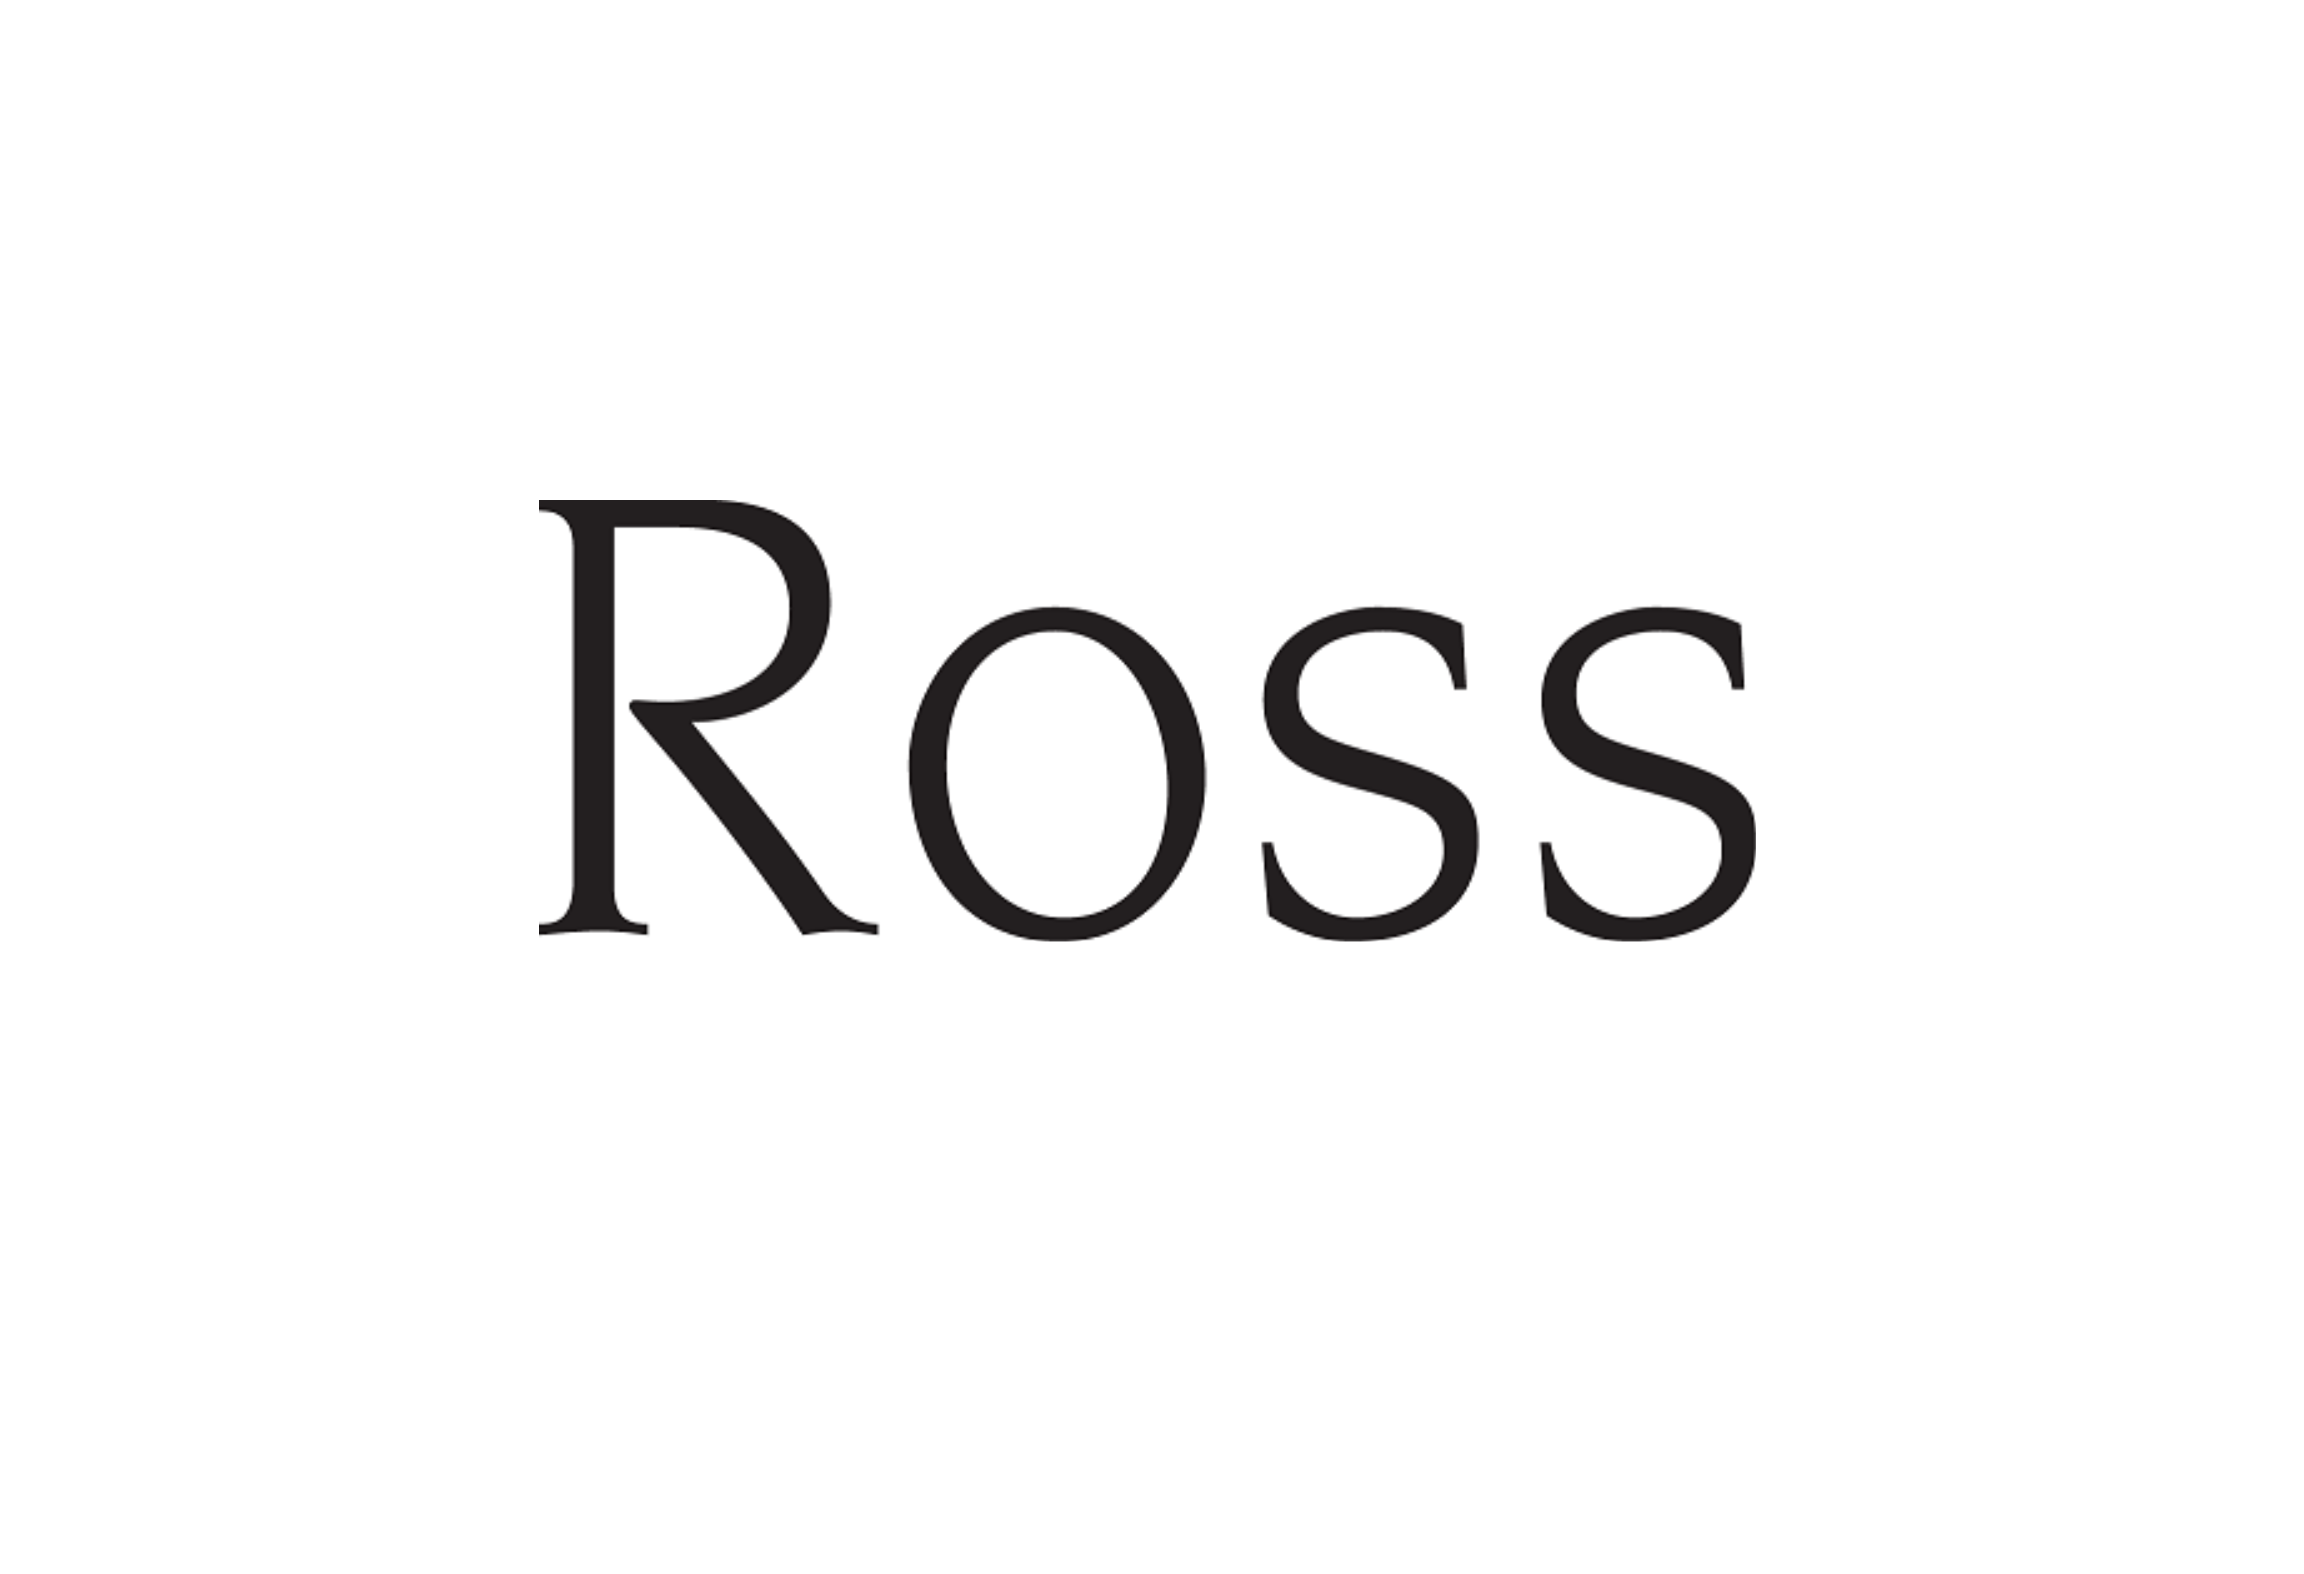 Ross Advertising – Medium